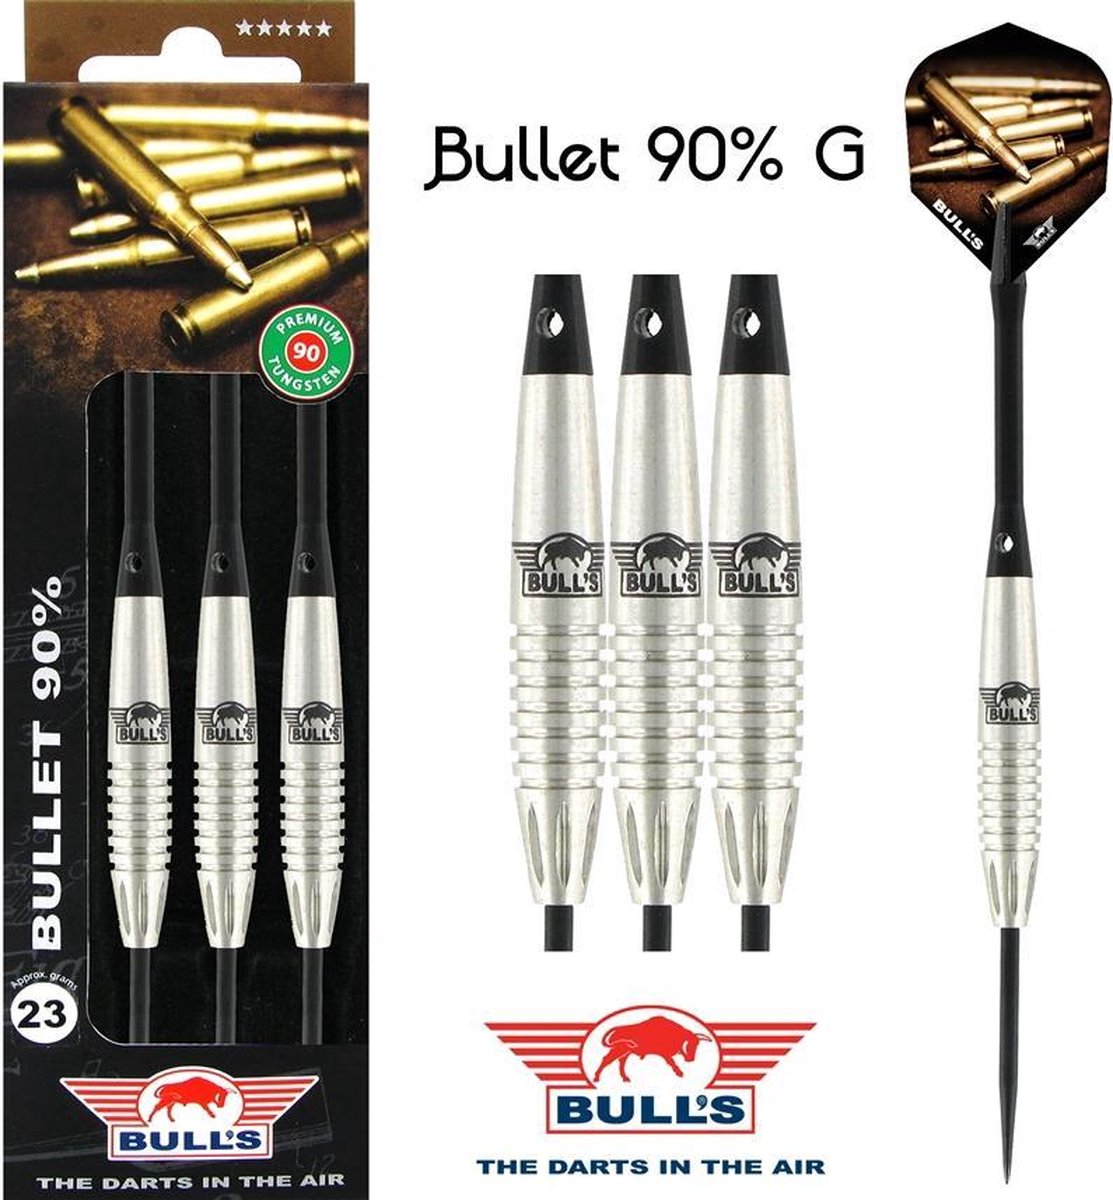 Bull's Bullet 90% B - 22 Gram